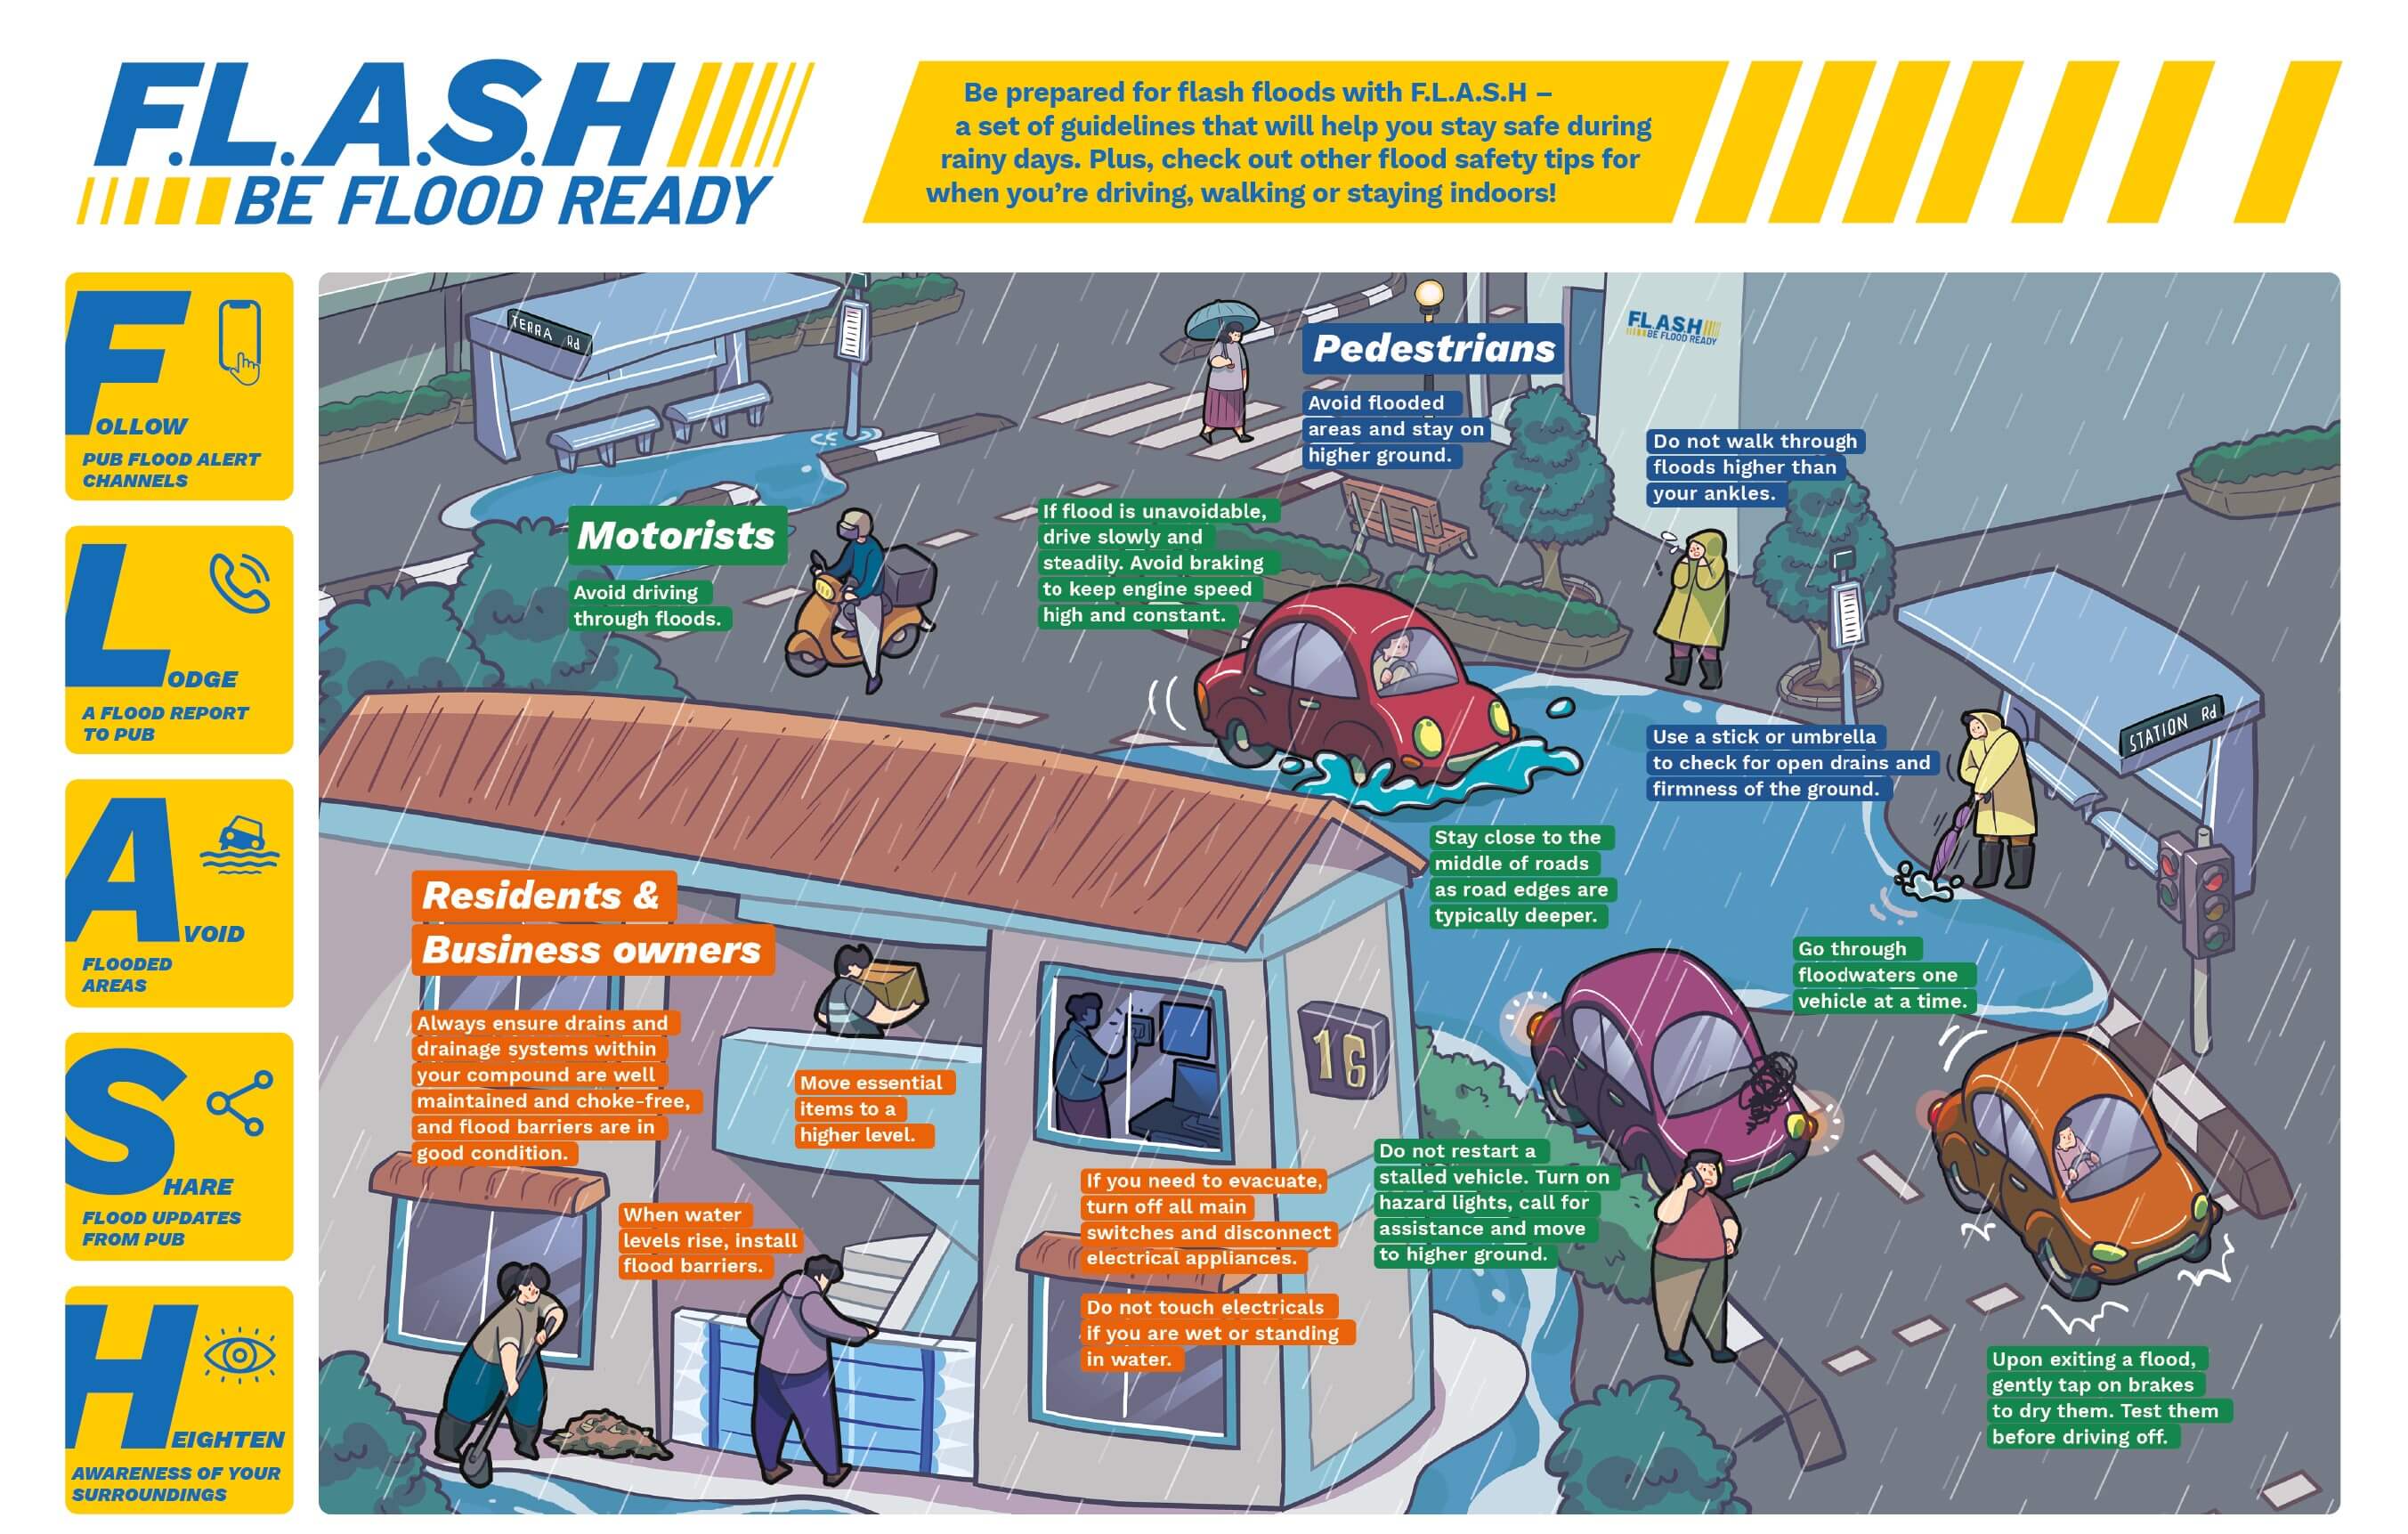 Flash flood advisory image